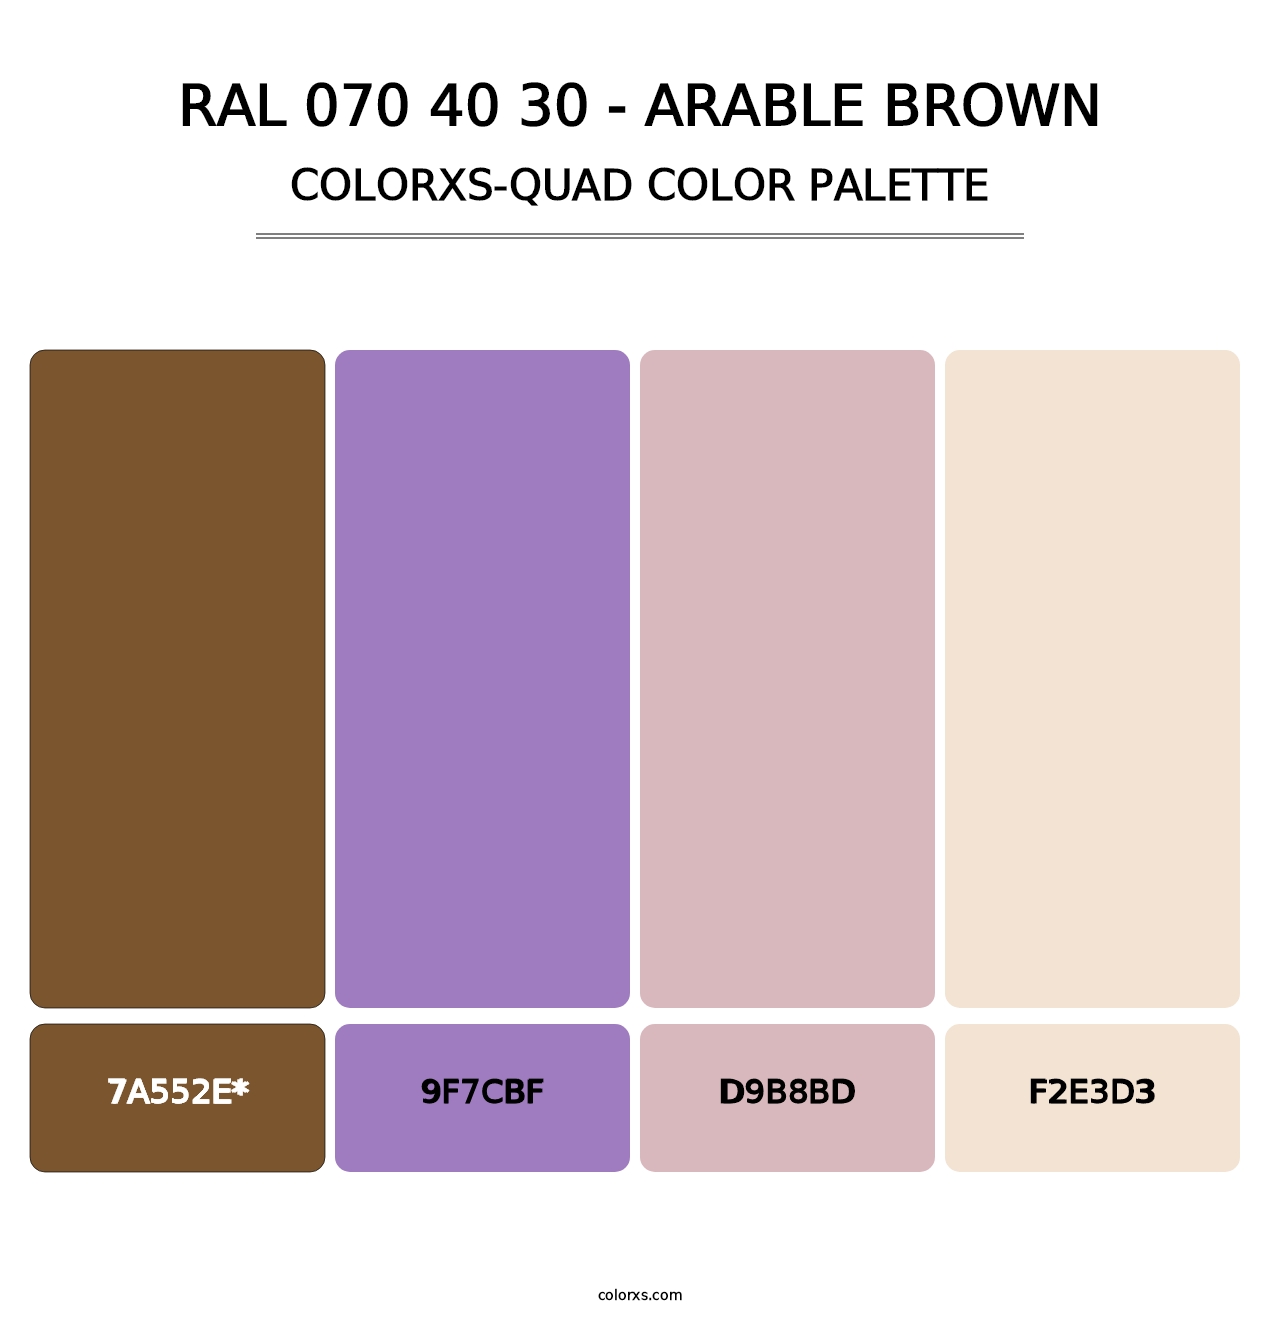 RAL 070 40 30 - Arable Brown - Colorxs Quad Palette